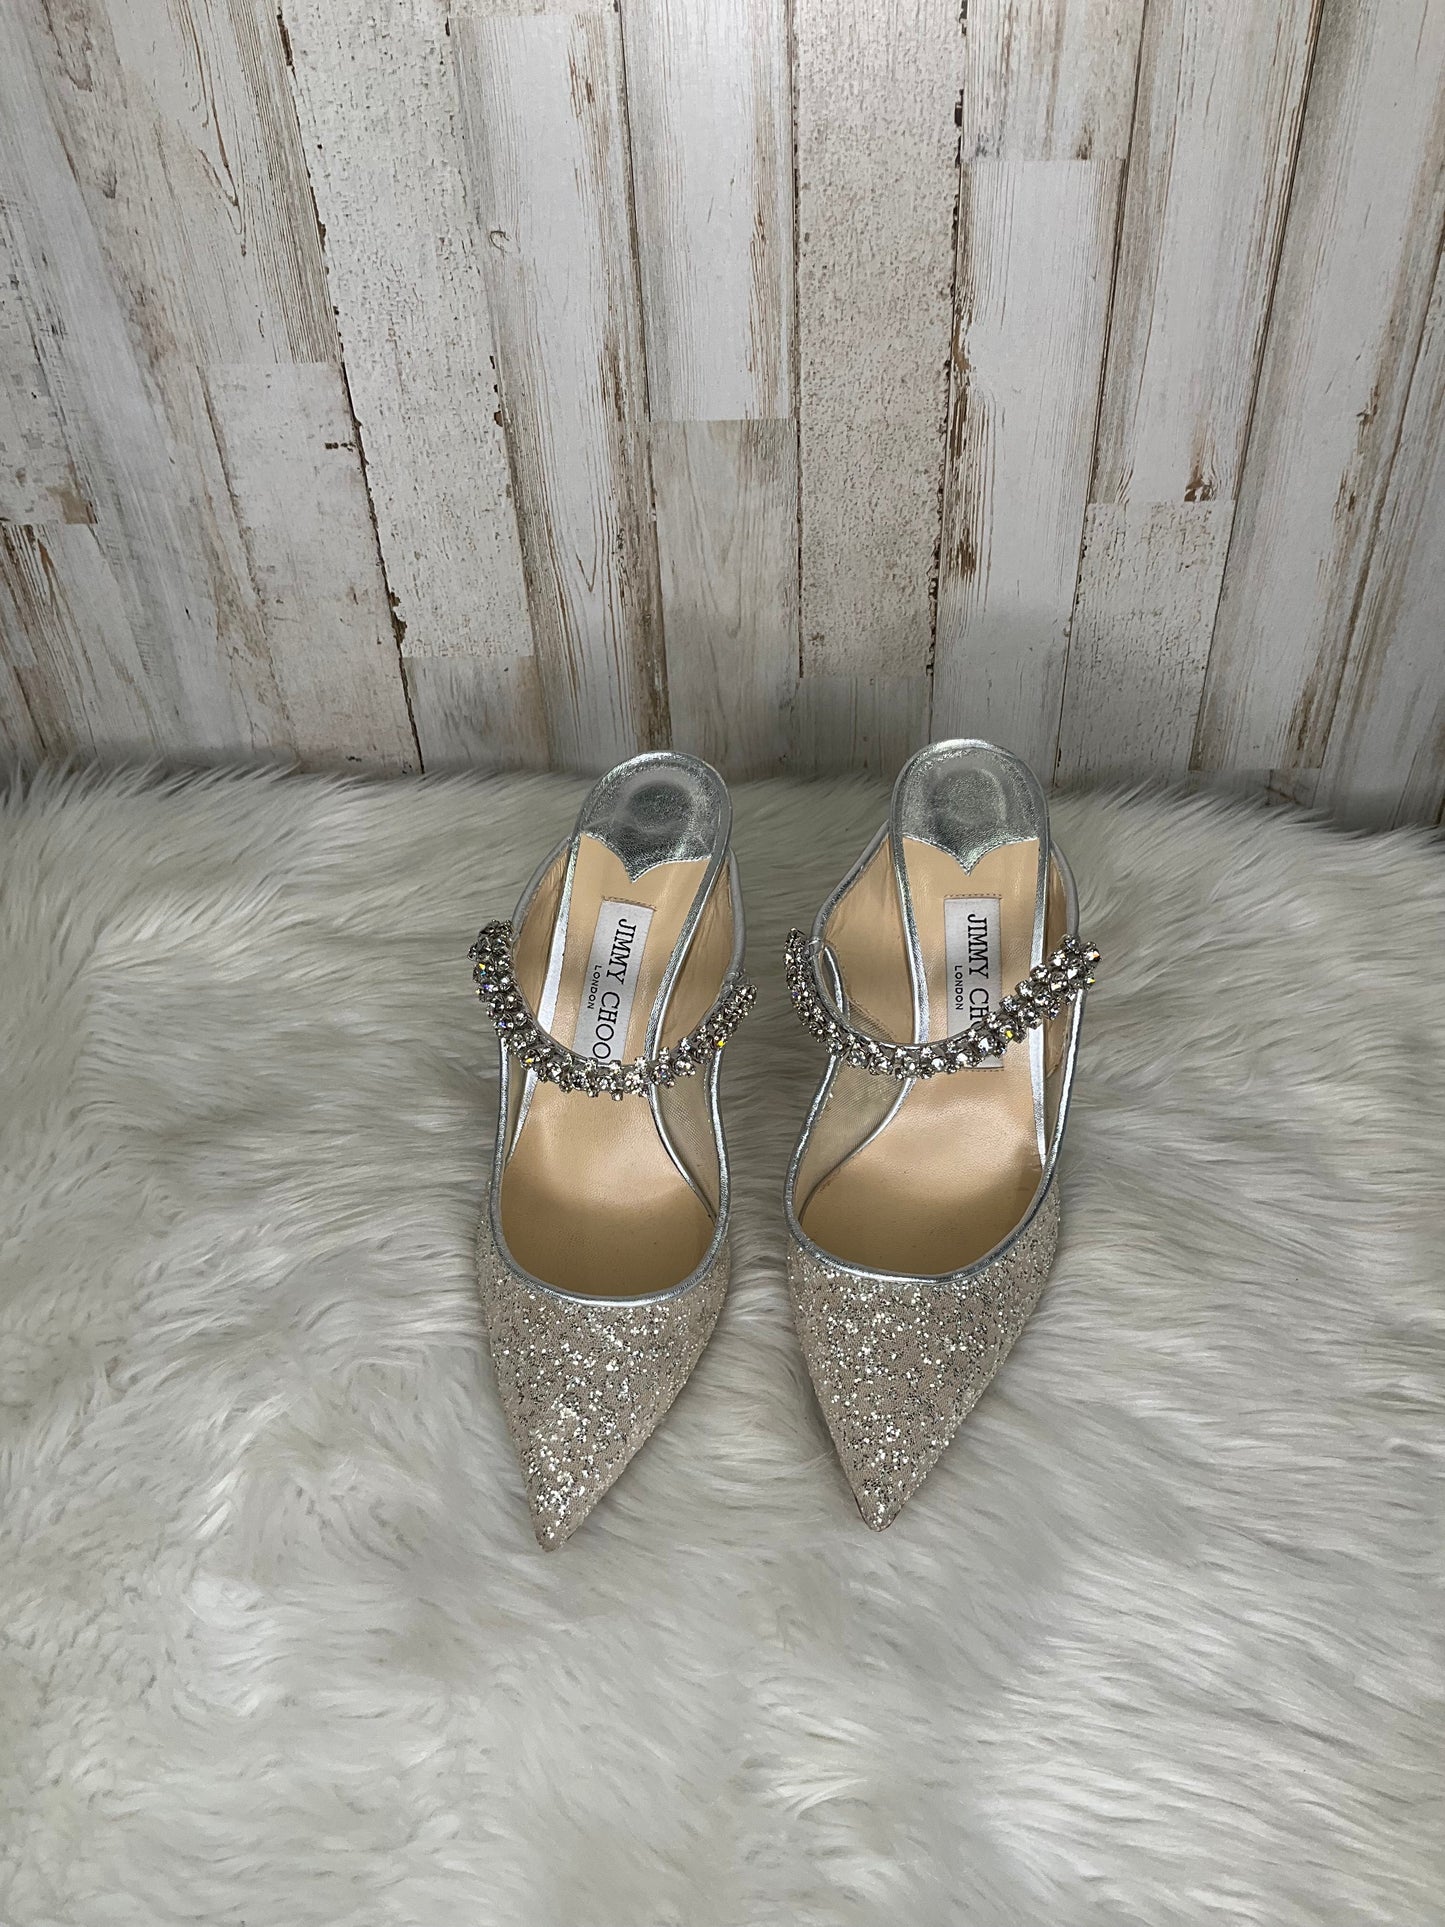 Silver Shoes Heels Stiletto Jimmy Choo, Size 8